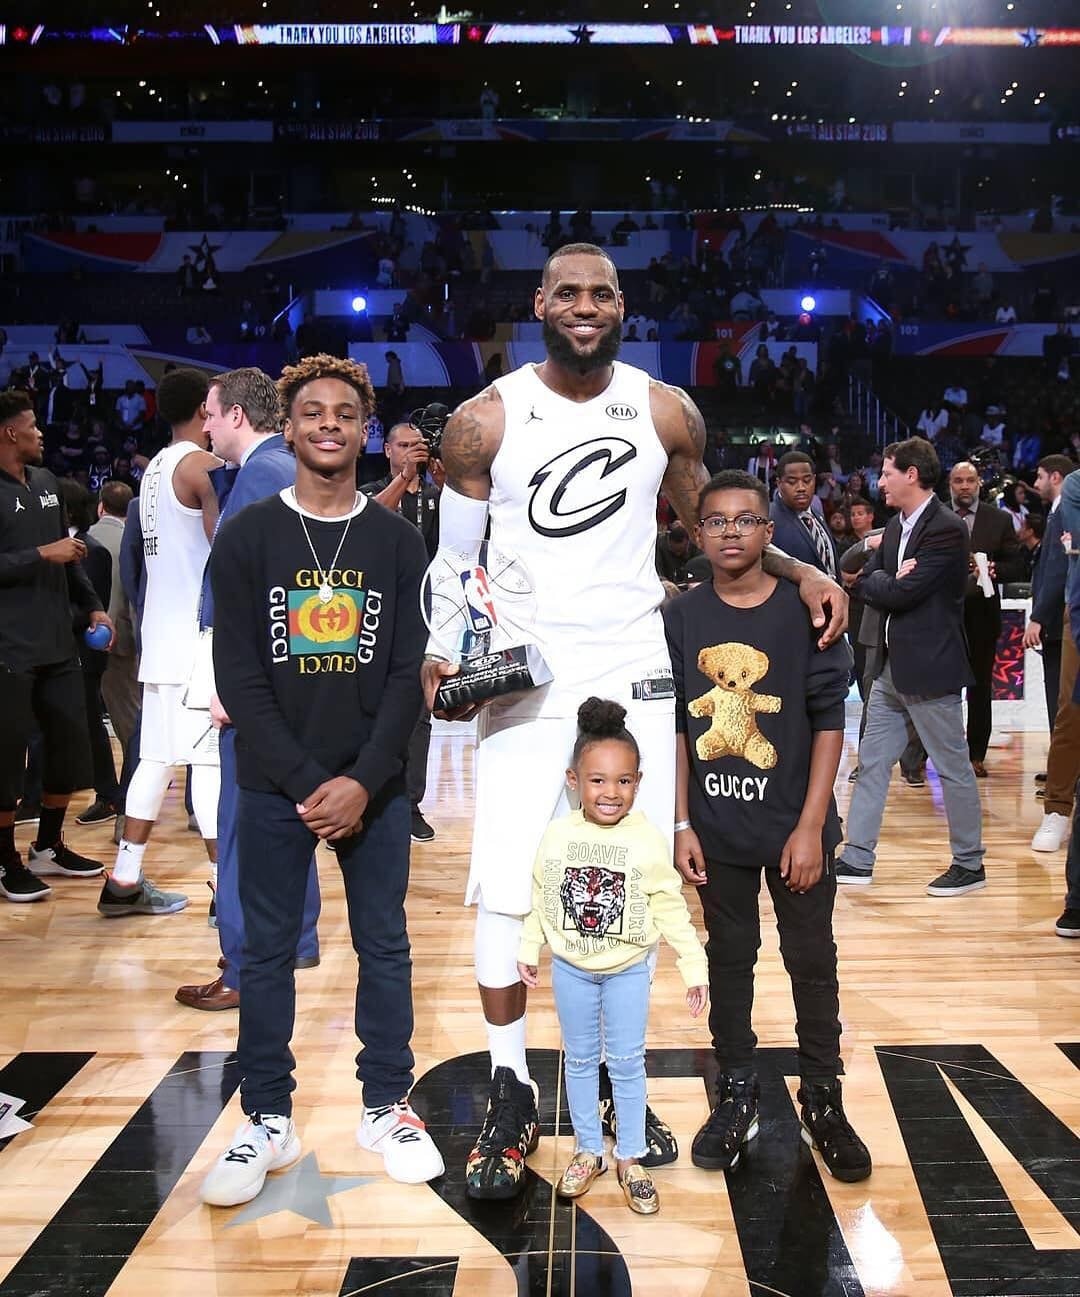 LeBron James 夺得 NBA 2018 洛杉磯全明星賽 MVP